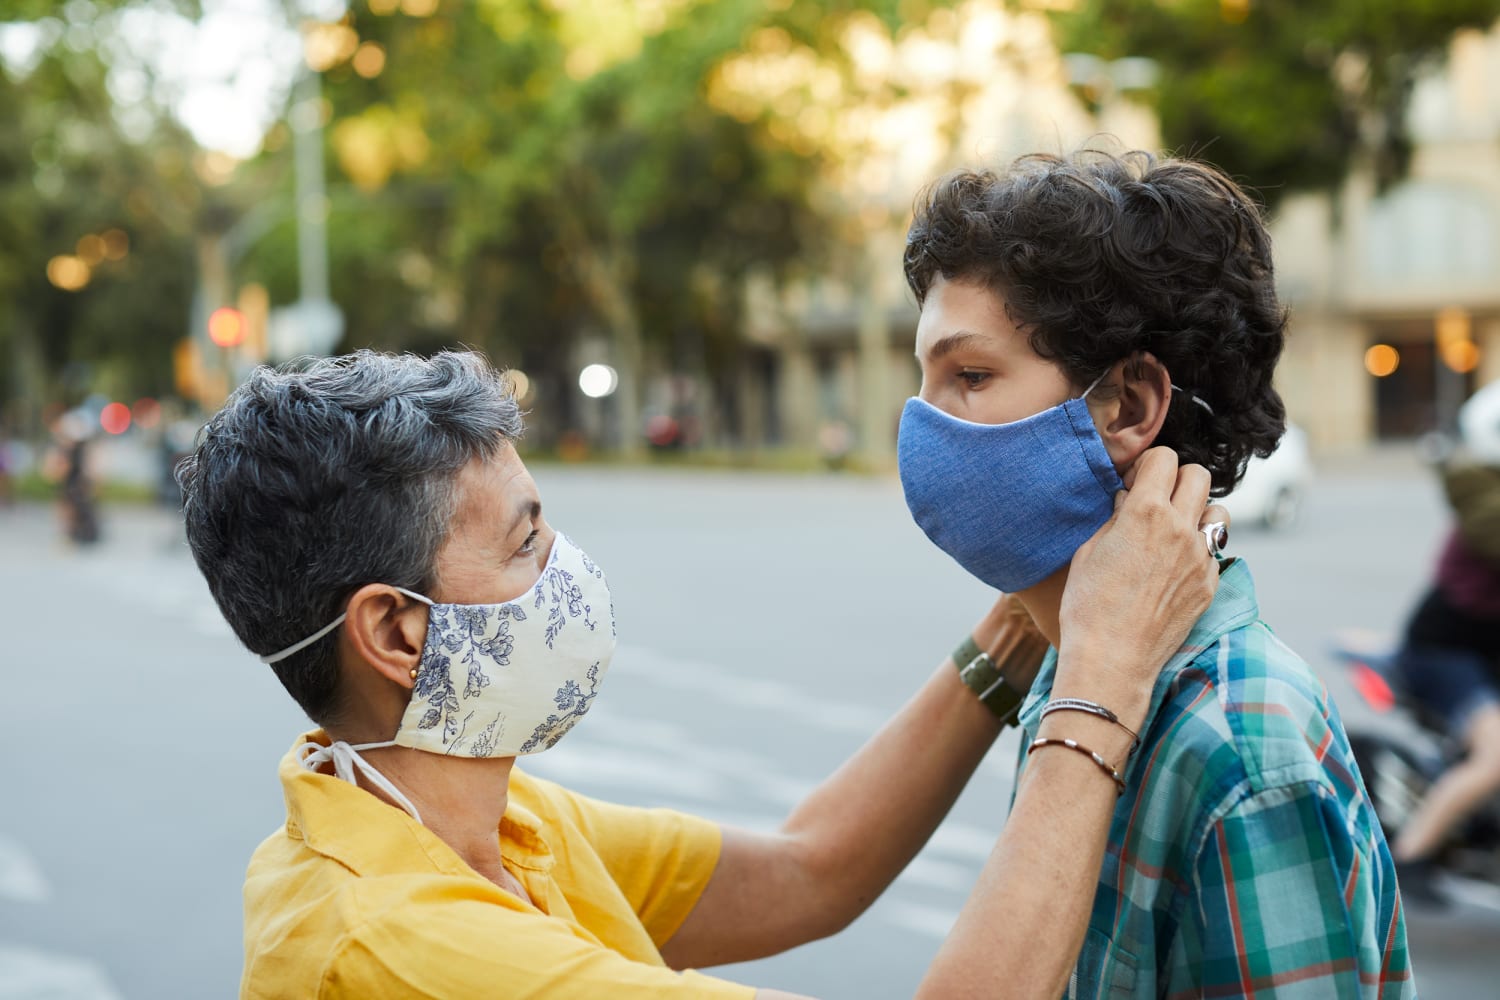 klimaks ukrudtsplante himmel Best face masks of the year: Doctors share their favorite masks